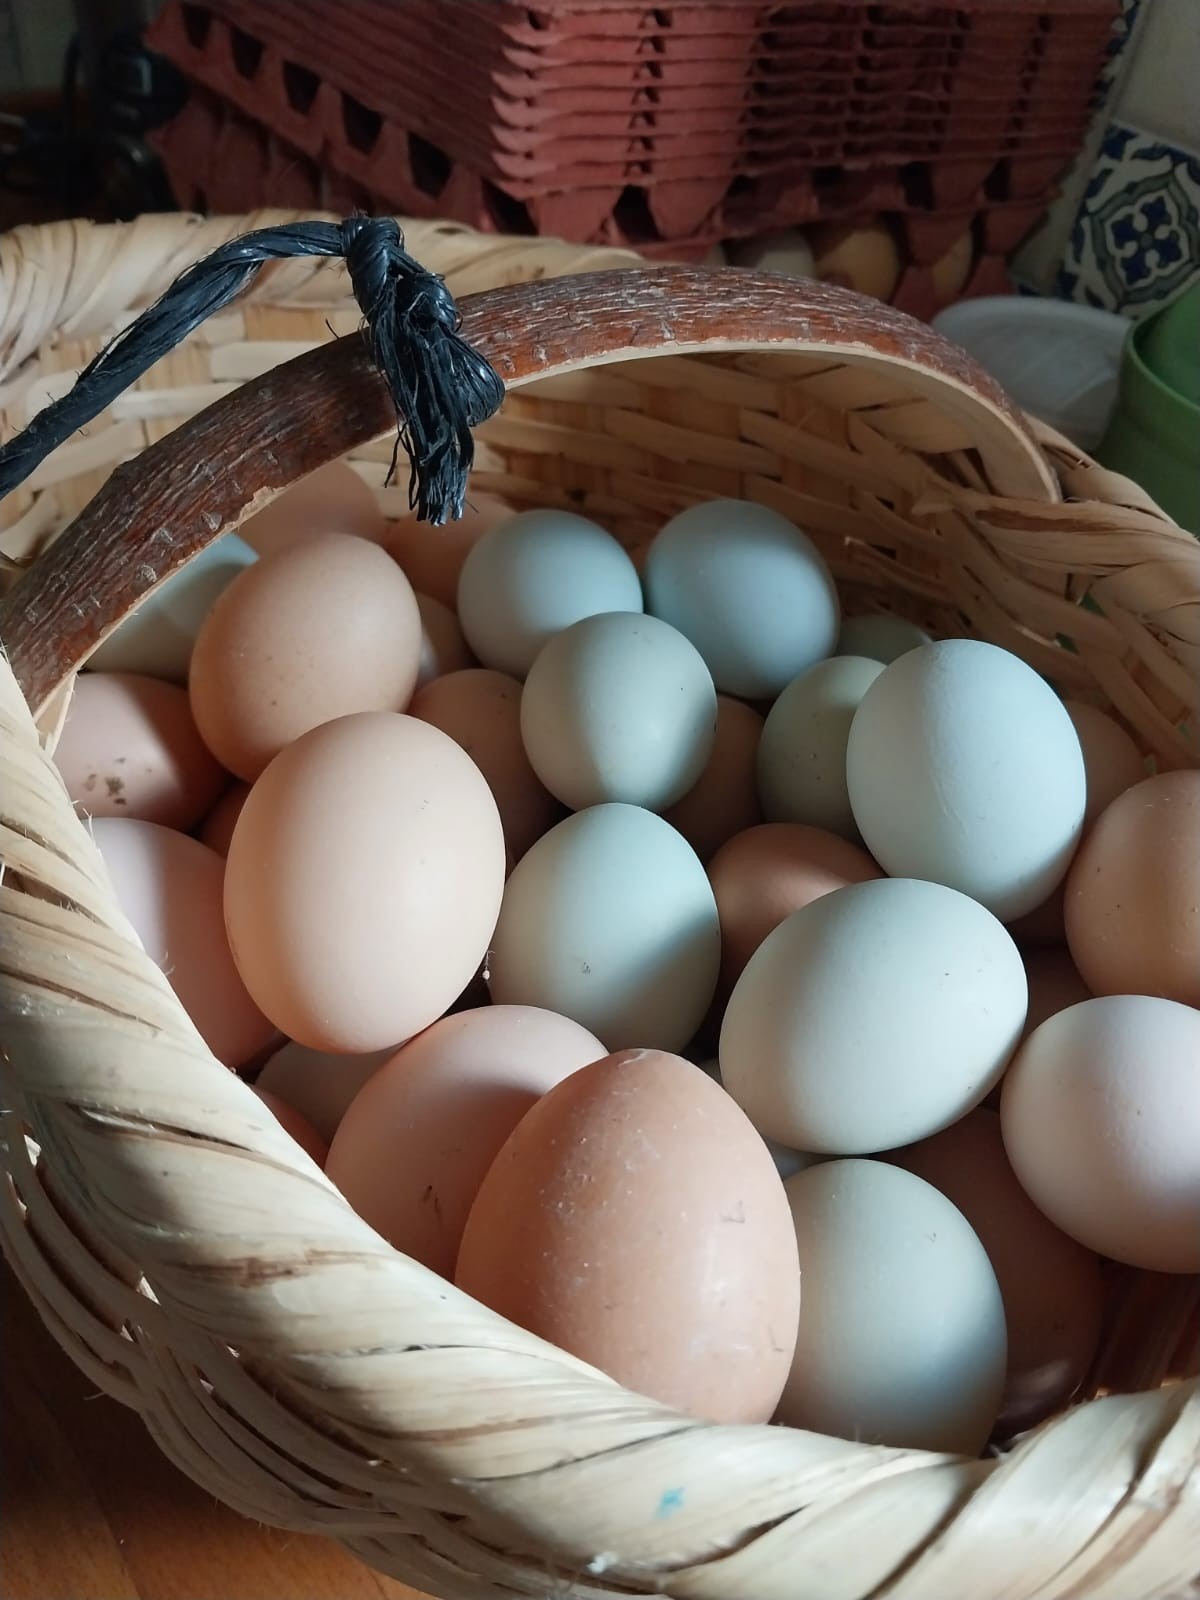 (Bandırma içi) Doğal Beslenen Gezen Tavuk Yumurtası (Köy Yumurtası)